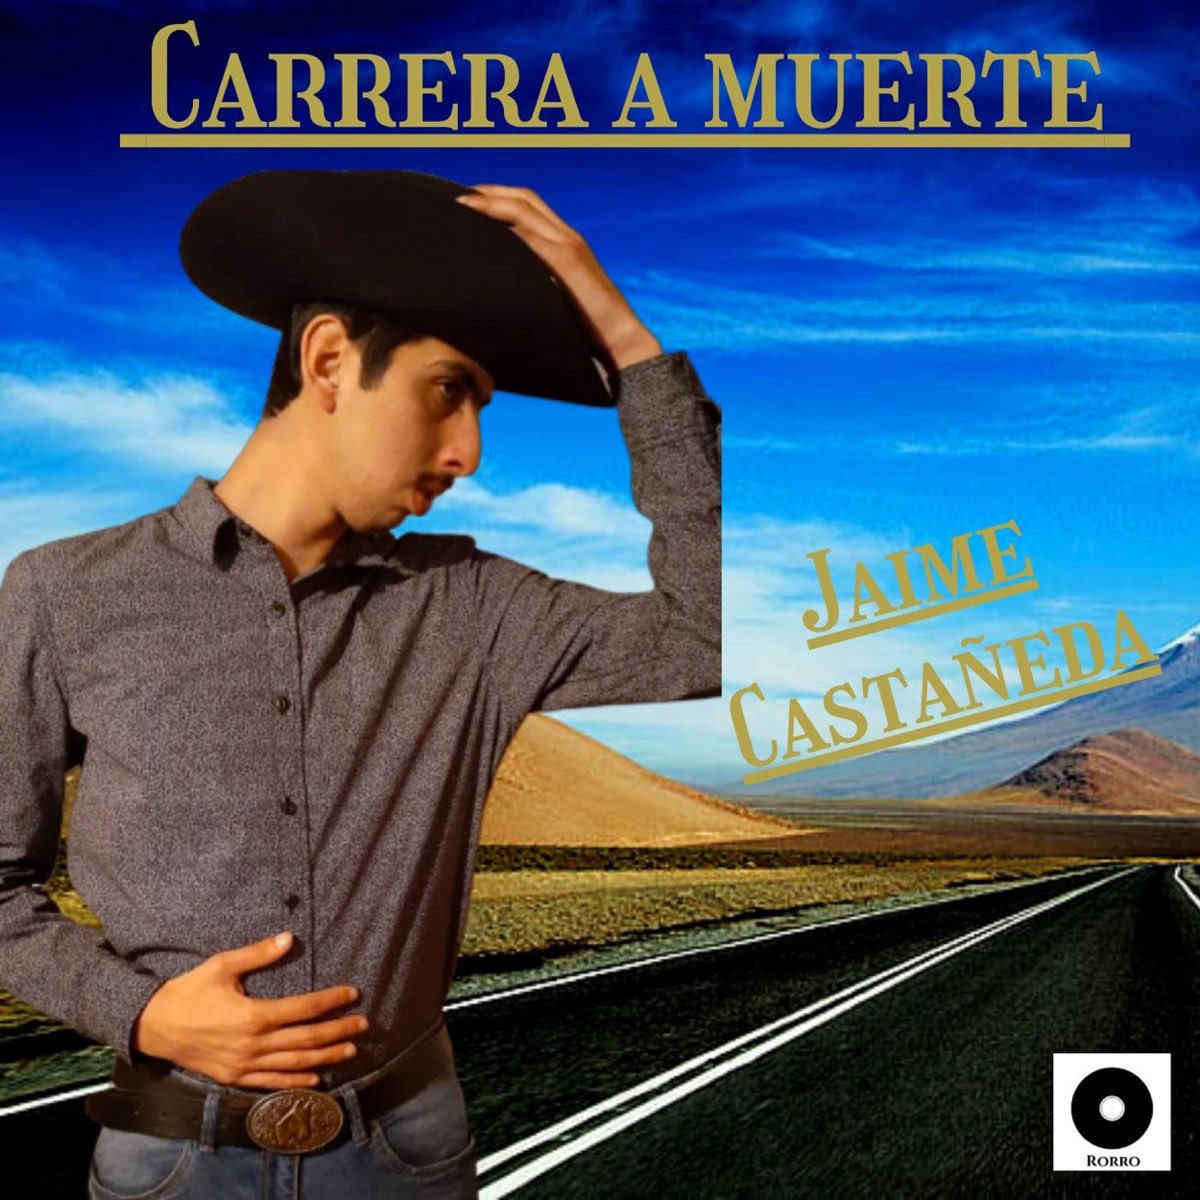 Carrera a Muerte - Single de Jaime Castañeda en Apple Music